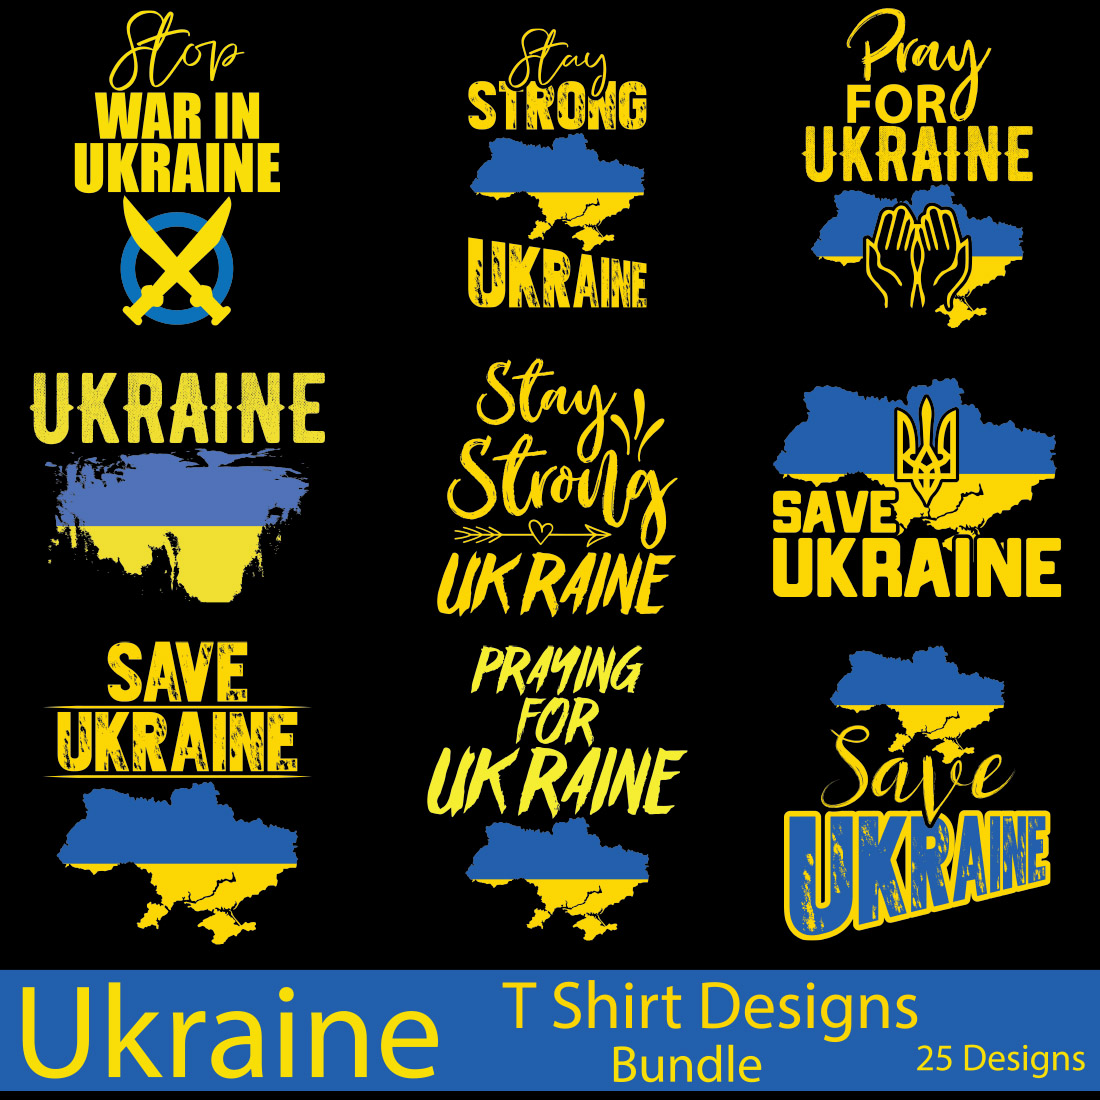 Ukraine T-Shirt Designs Bundle main cover image.